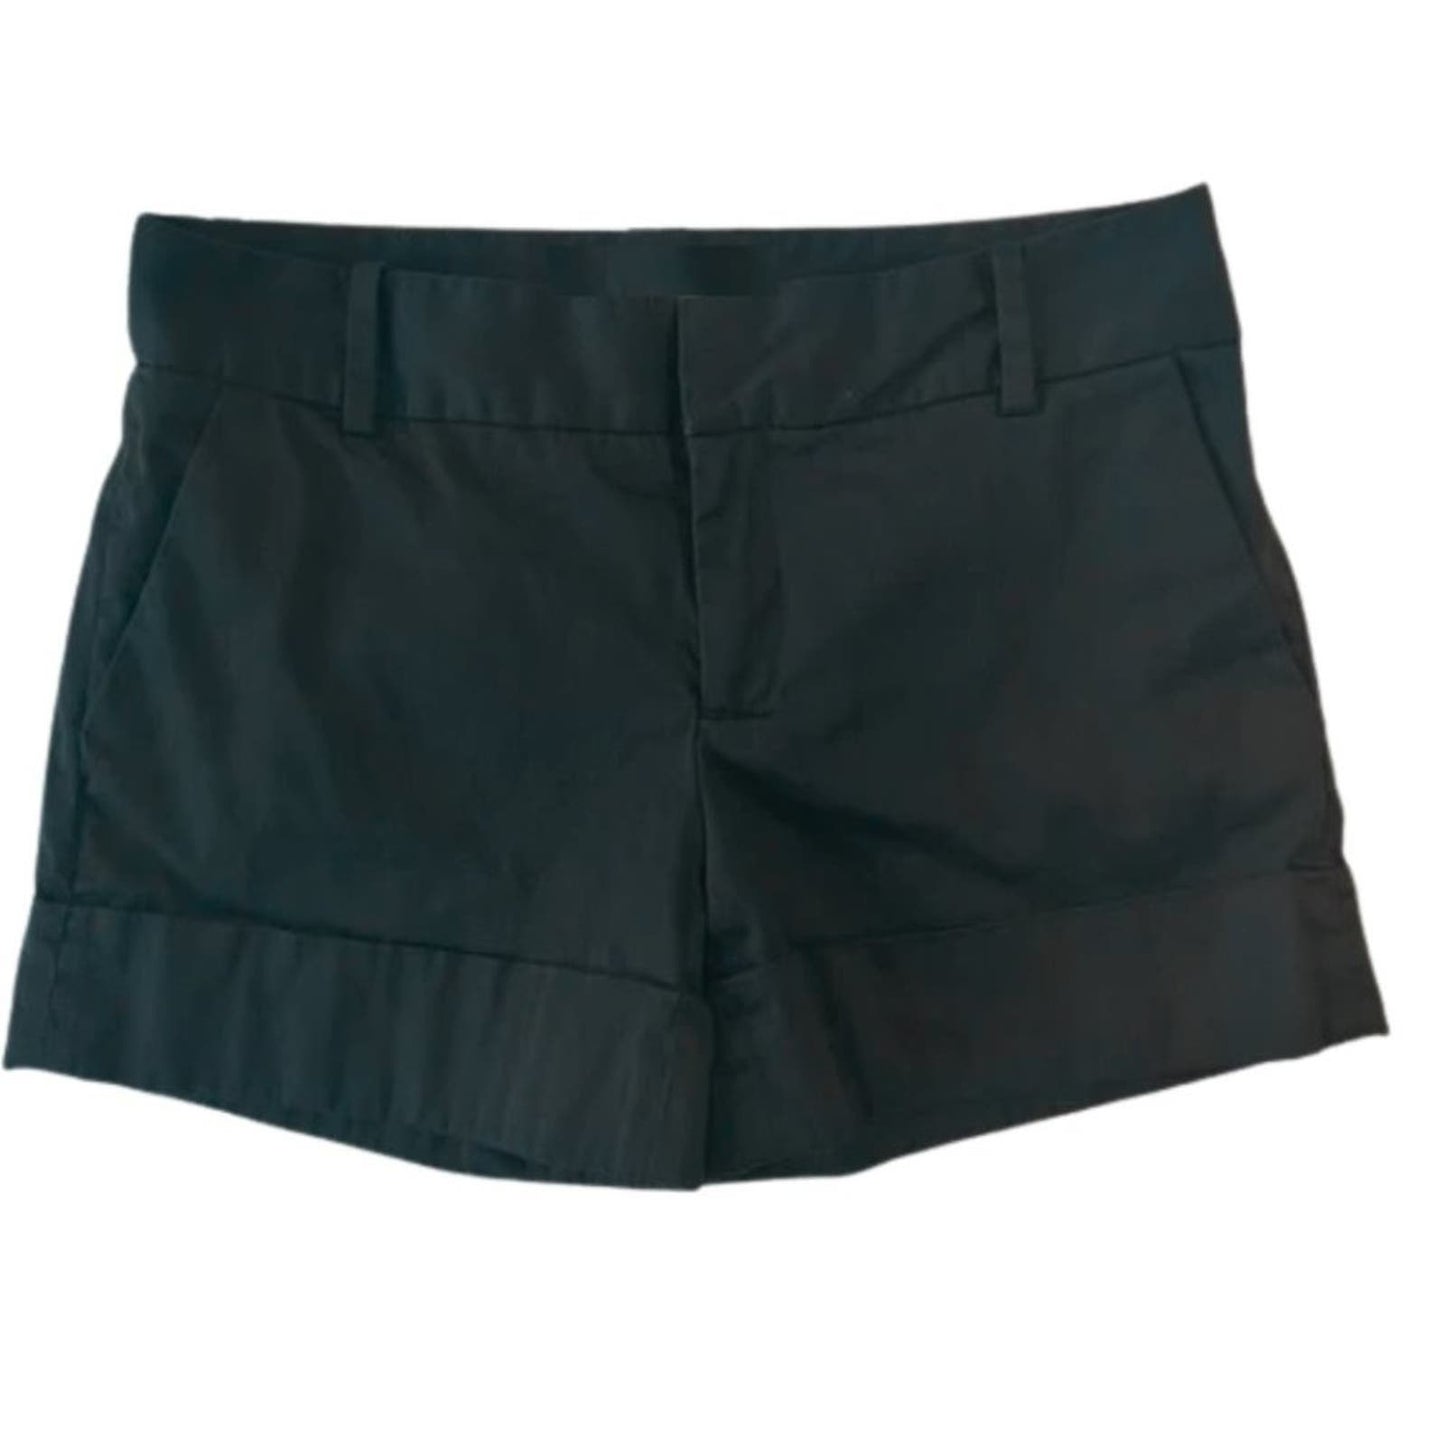 Zara Black Dressy Basic Shorts NWOT Size XS